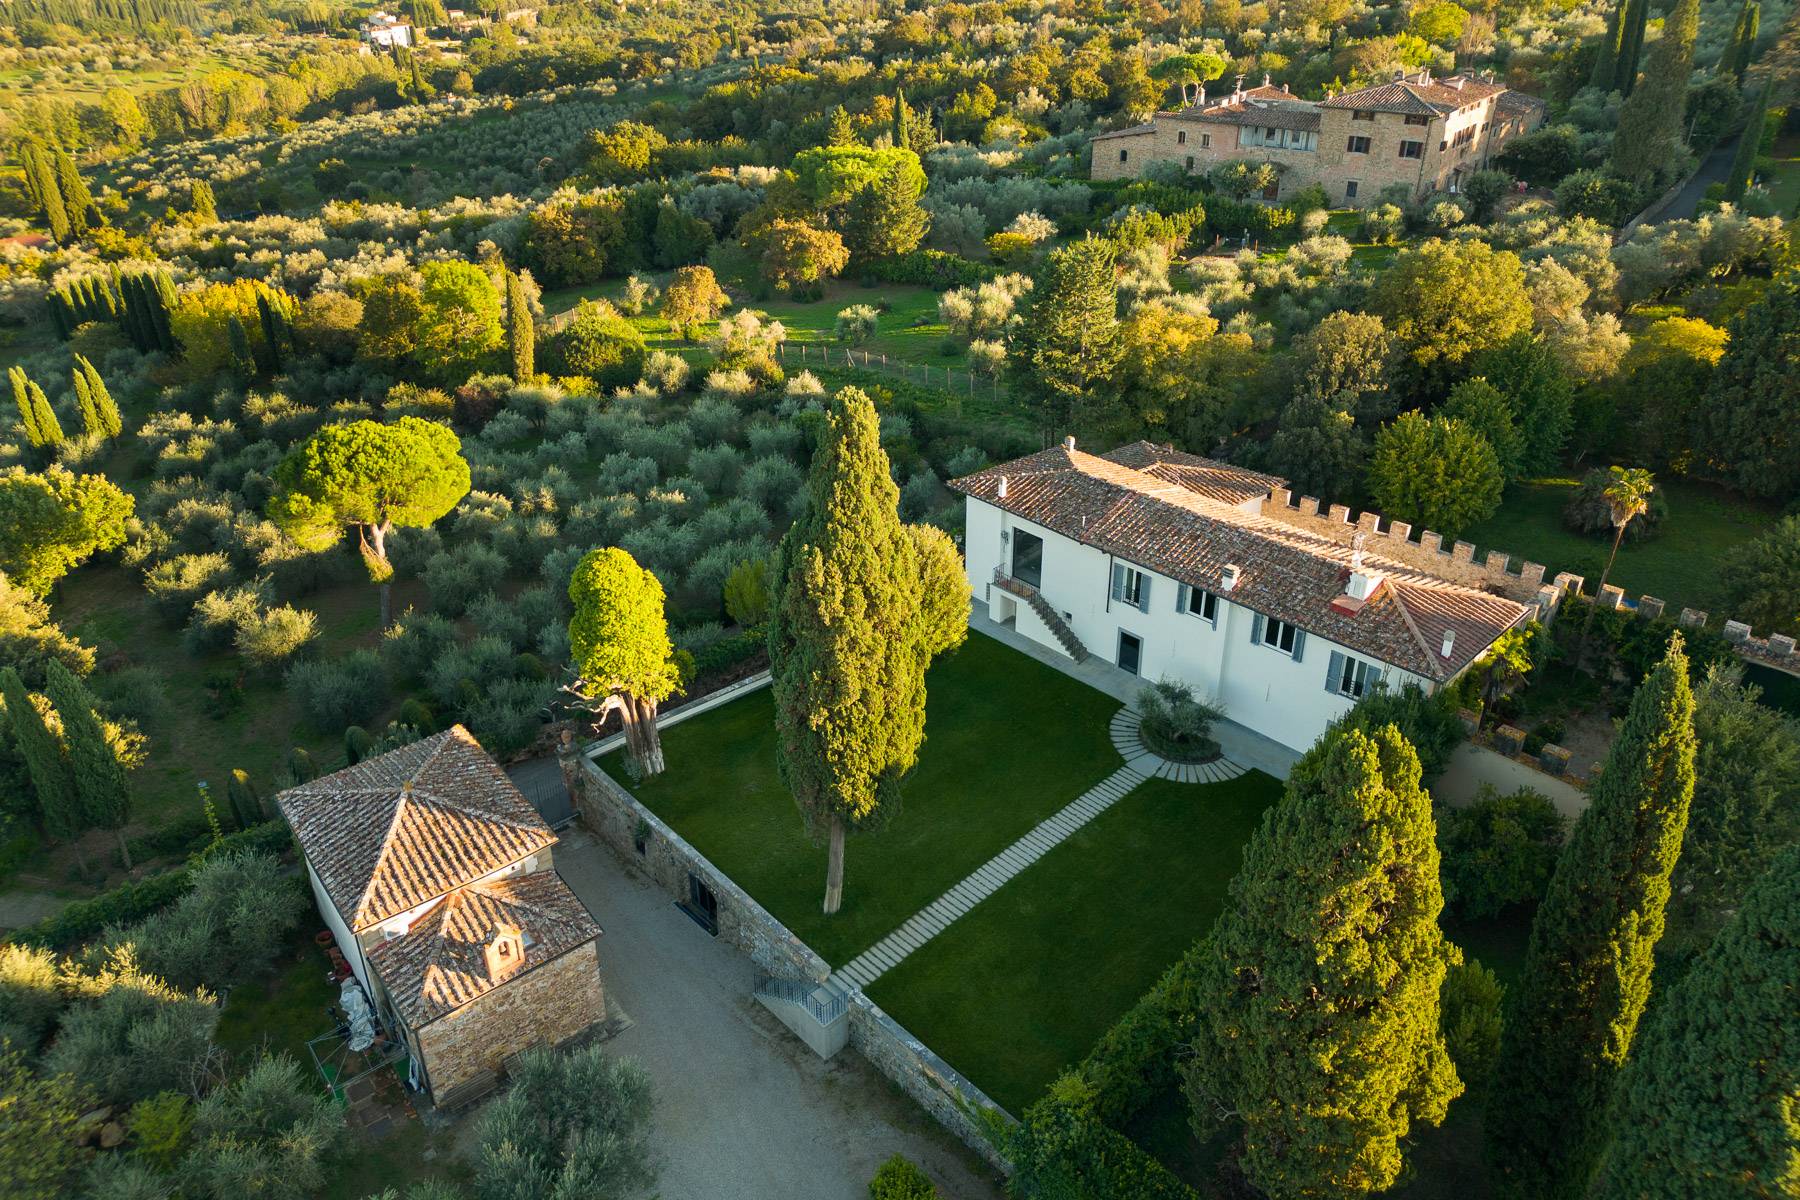 Villa in Vendita a Firenze: 5 locali, 750 mq - Foto 1